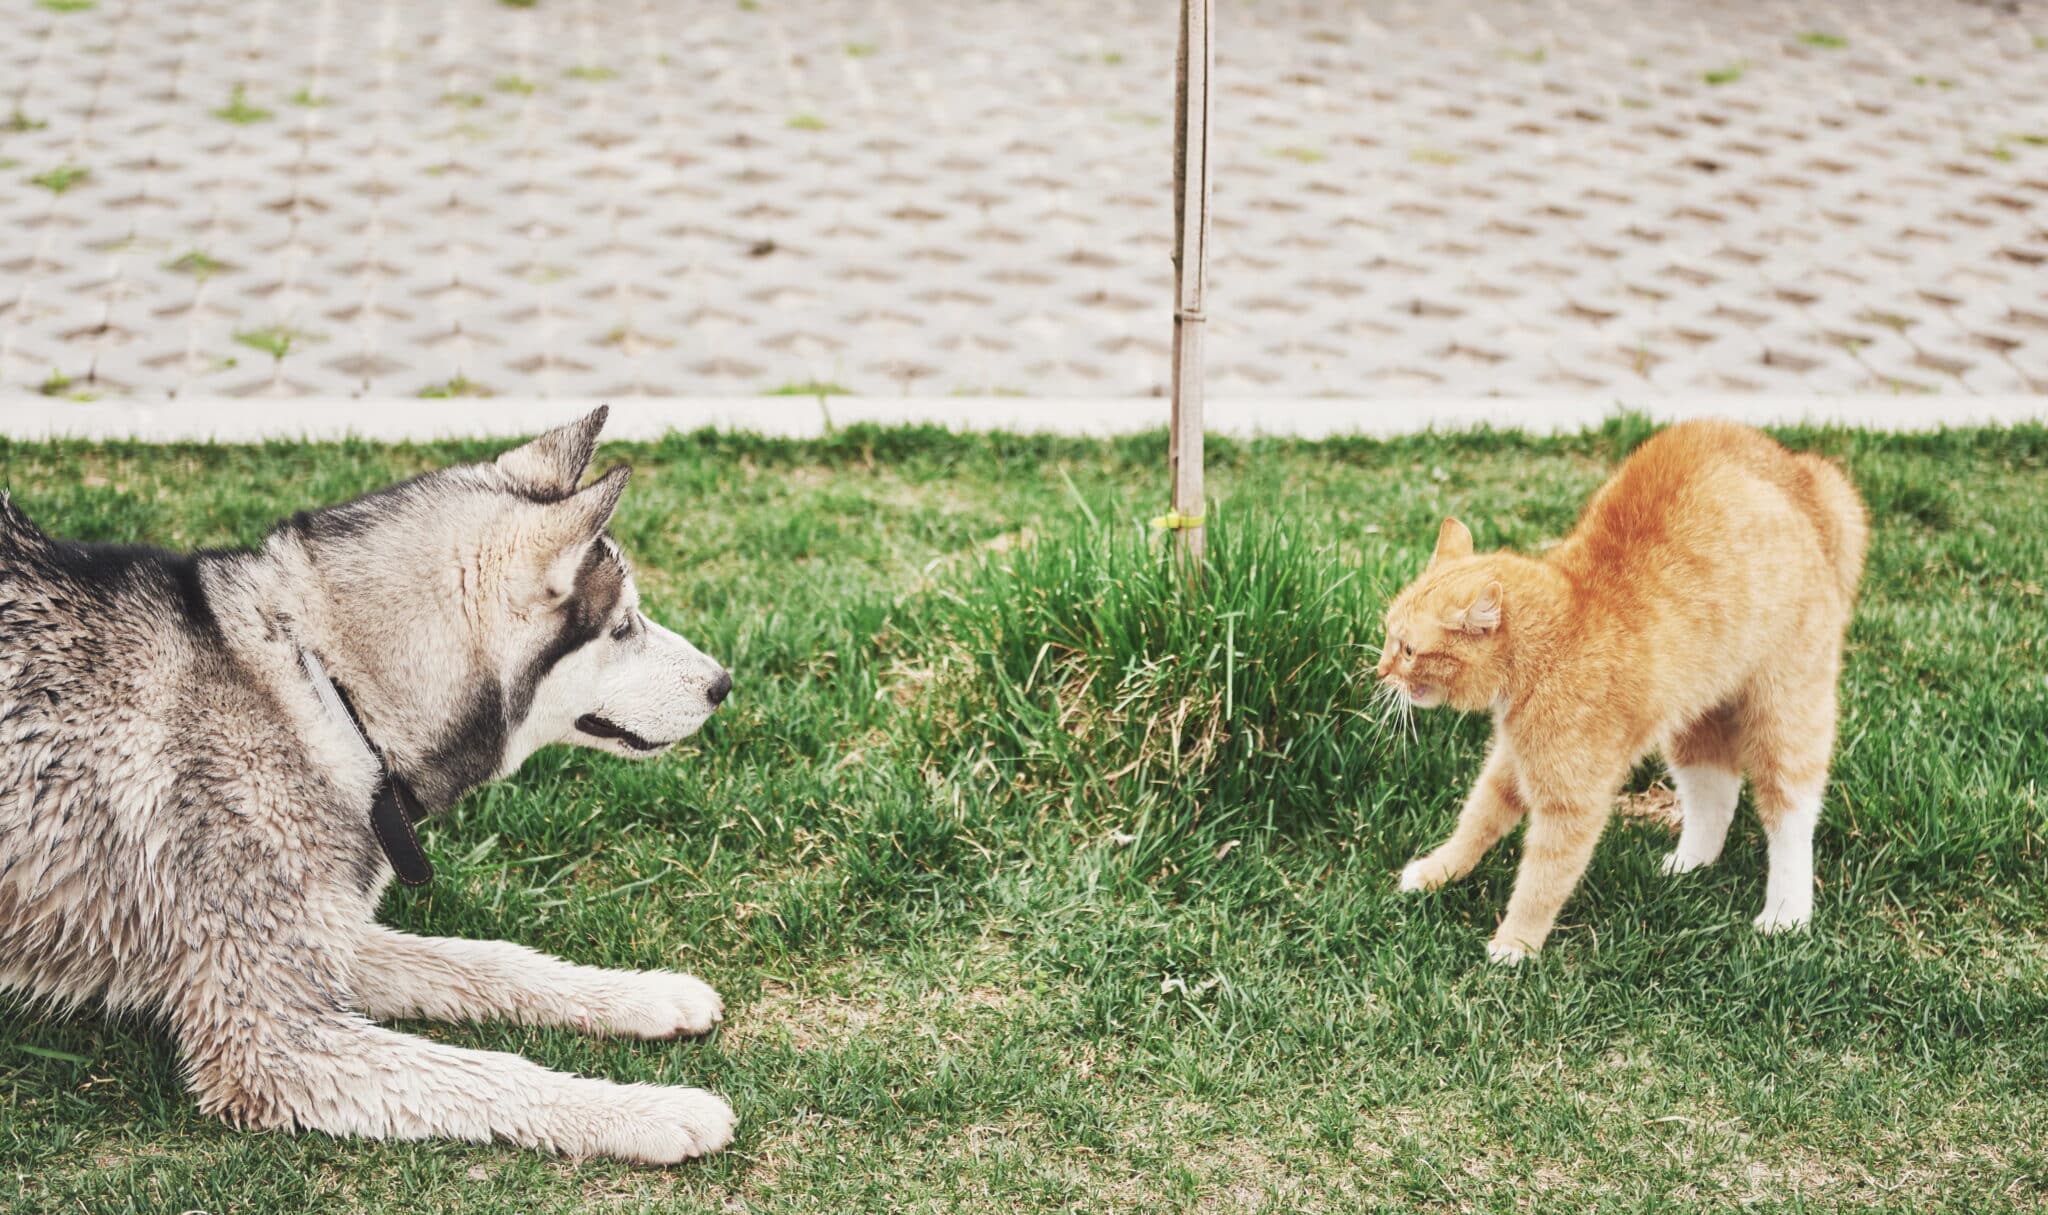 La convivenza tra cane e gatto